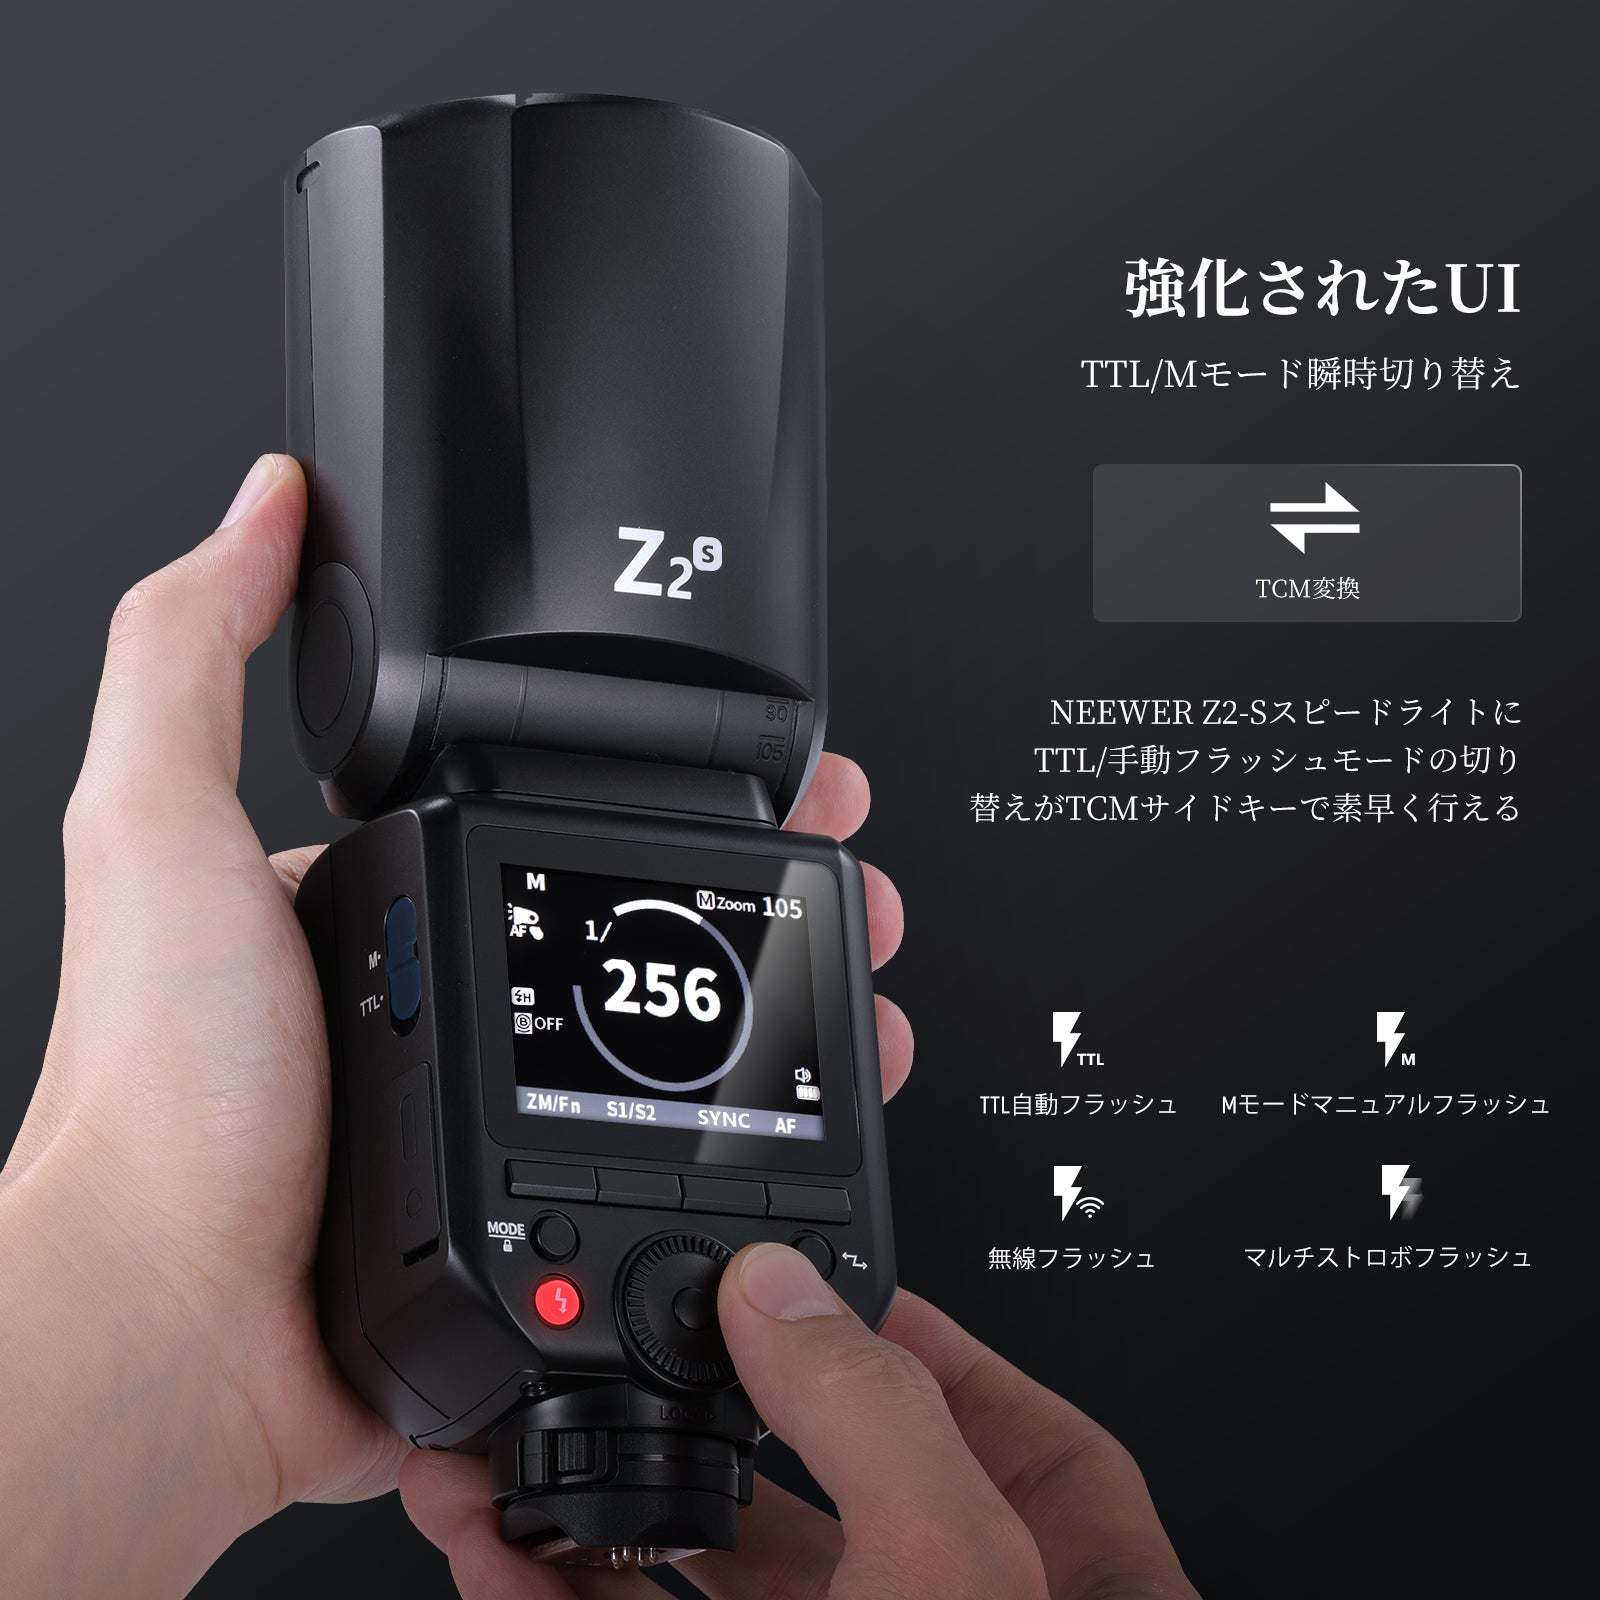 NEEWER Z2-S 2.4G TTL 丸型フラッシュスピードライト Sony用（金属シュー付き）